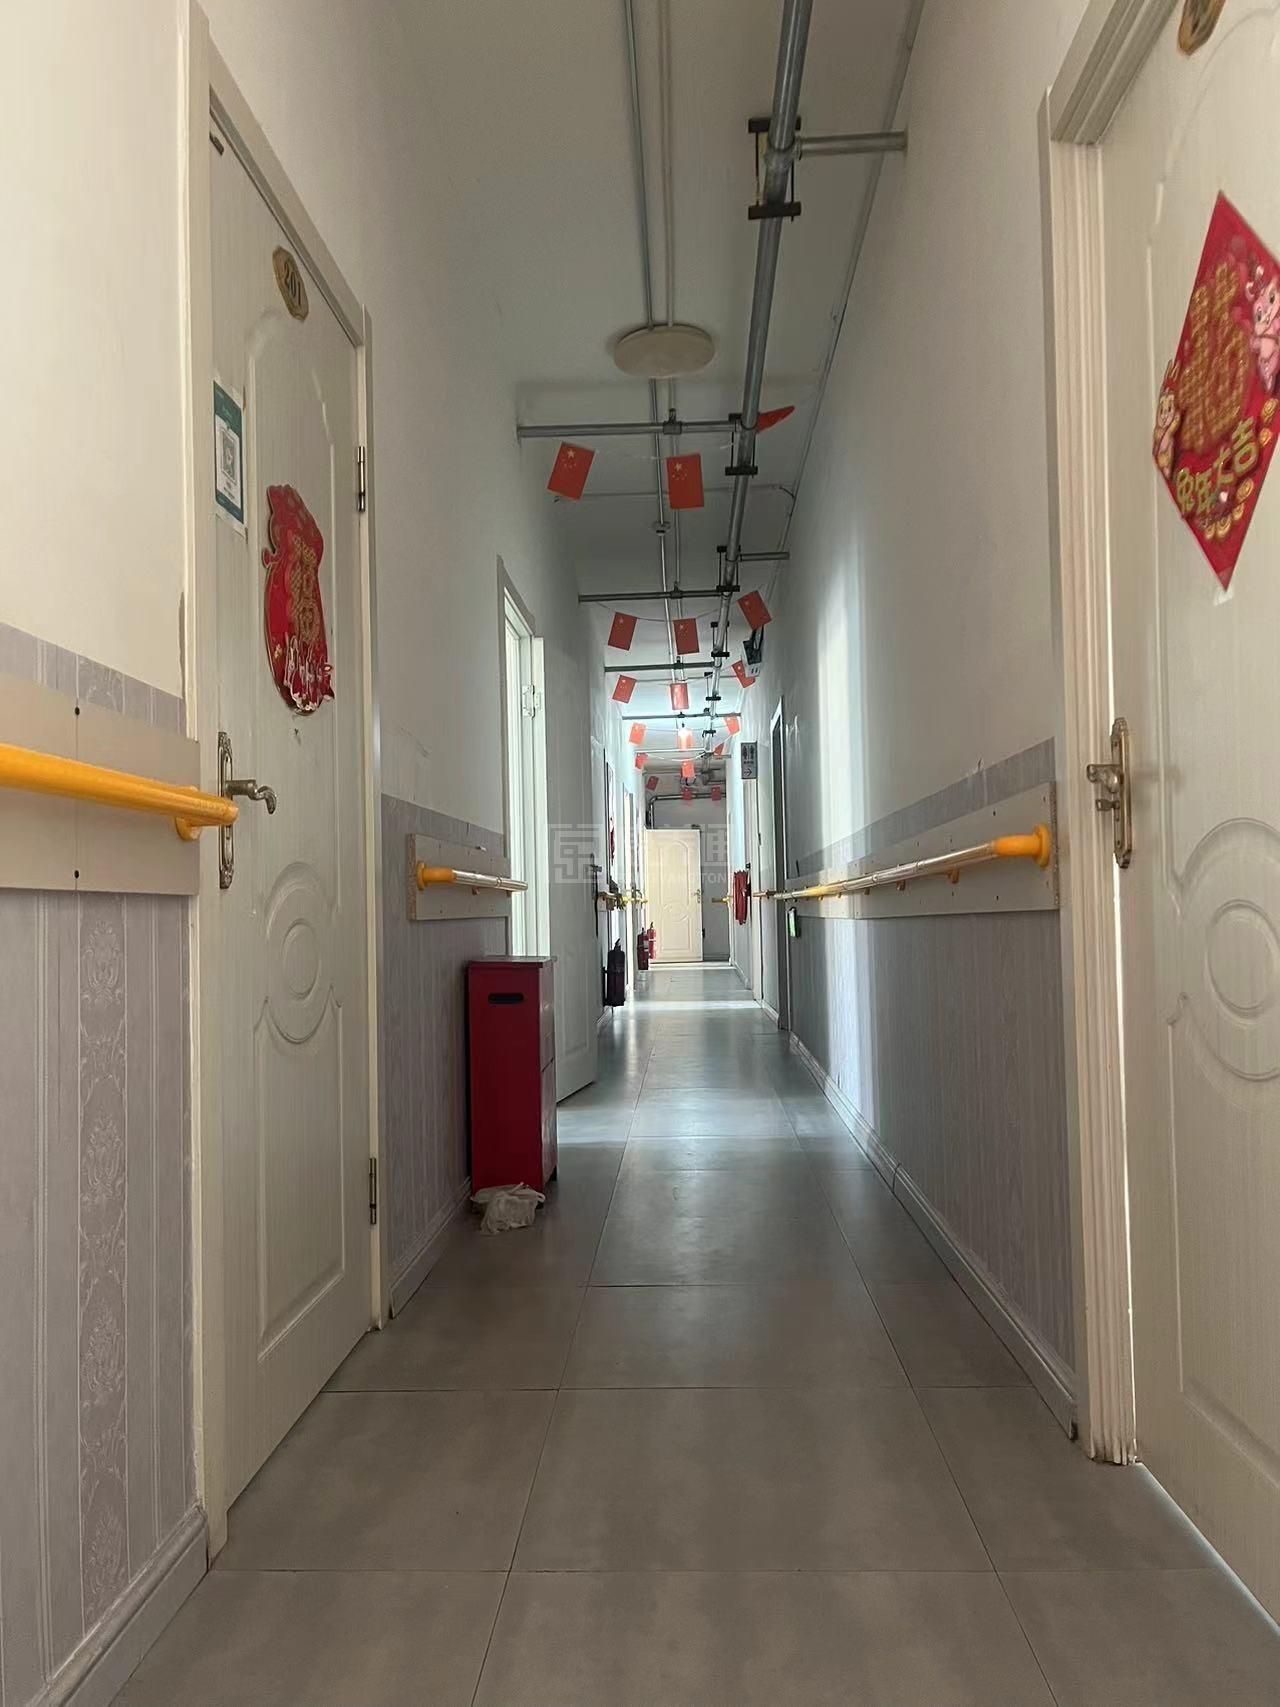 青冈县清华老年公寓服务项目图2亦动亦静、亦新亦旧